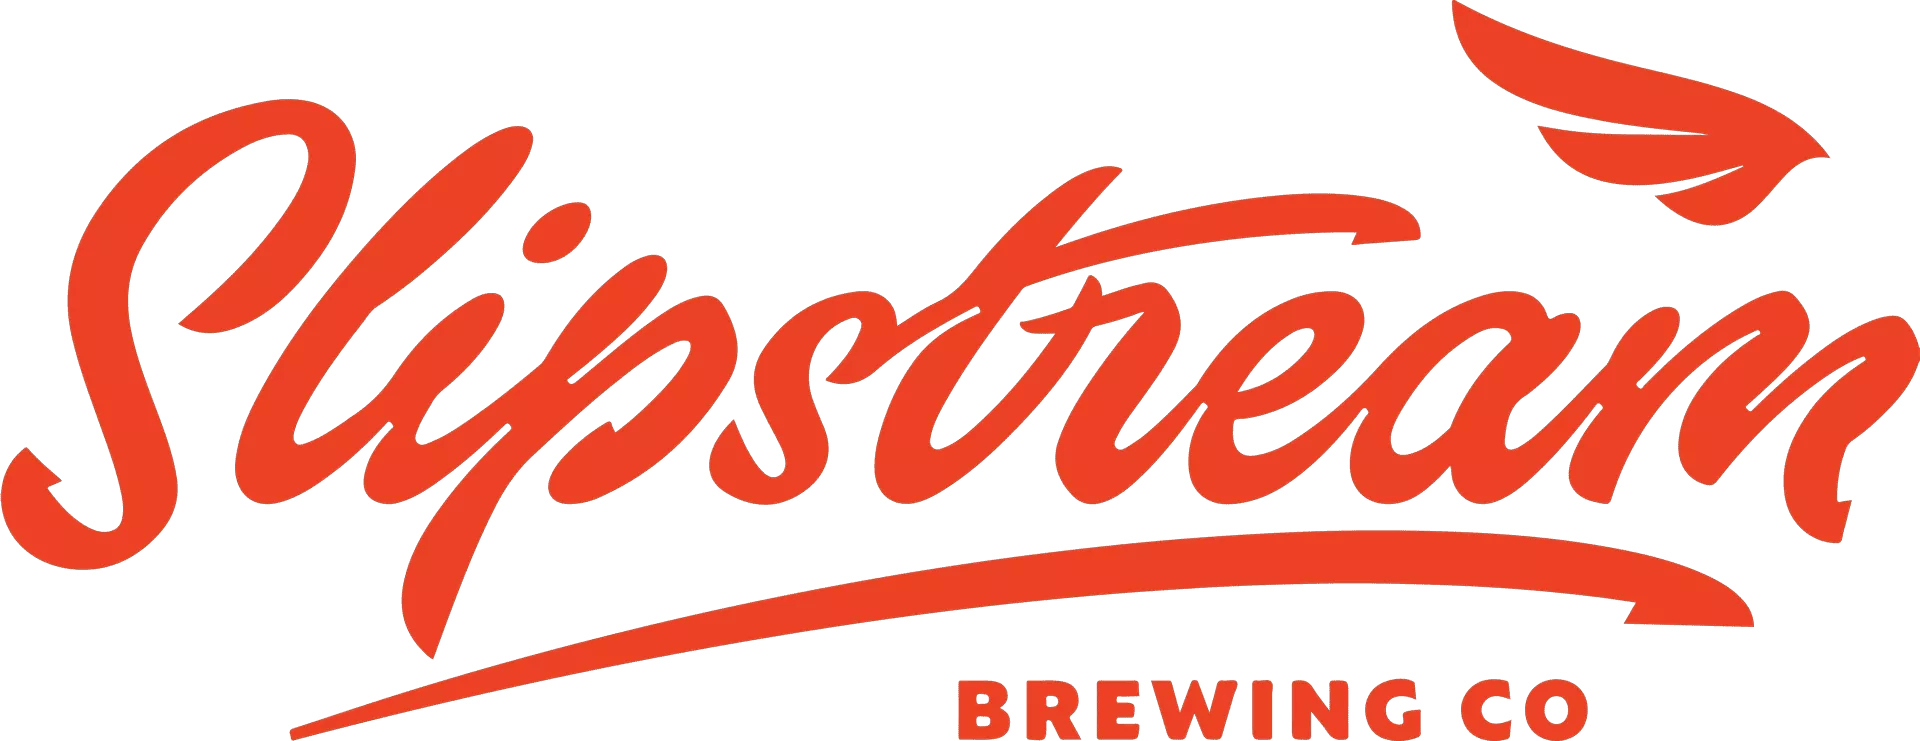 Logotipo de la cervecería Slipstream